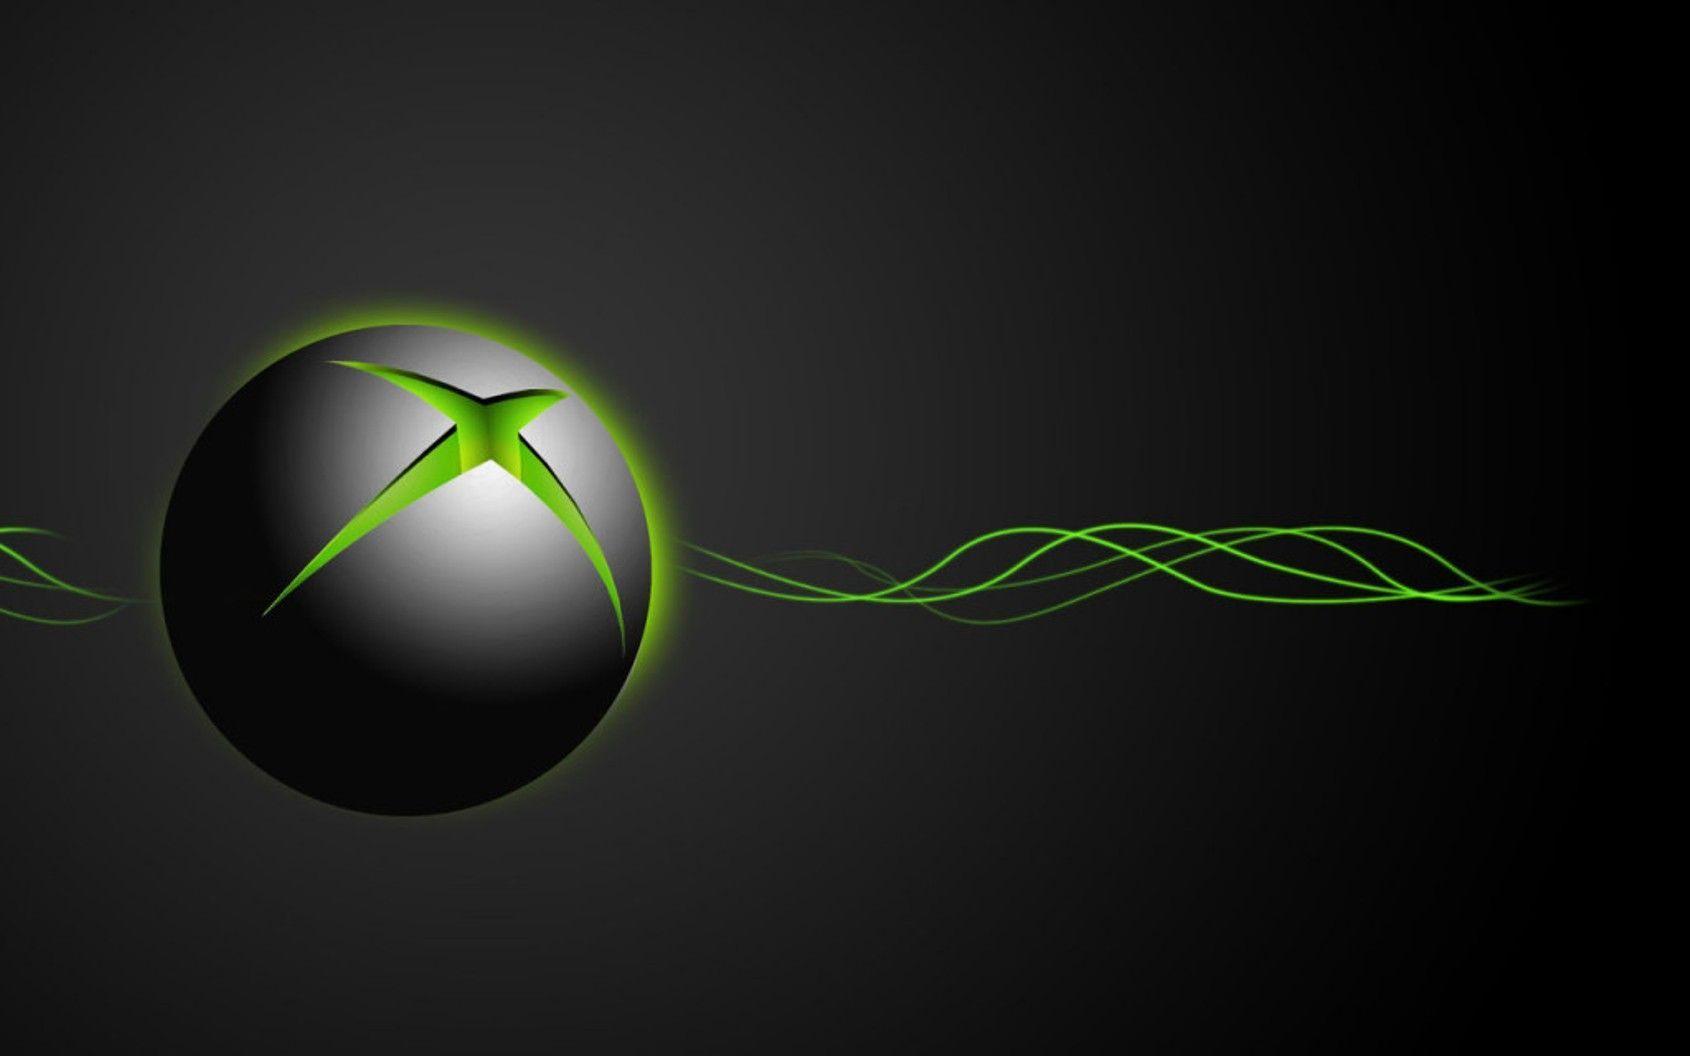 Windows Xbox Logo - Xbox One Games Logo Wallpaper | games | Pinterest | Xbox, Xbox one ...